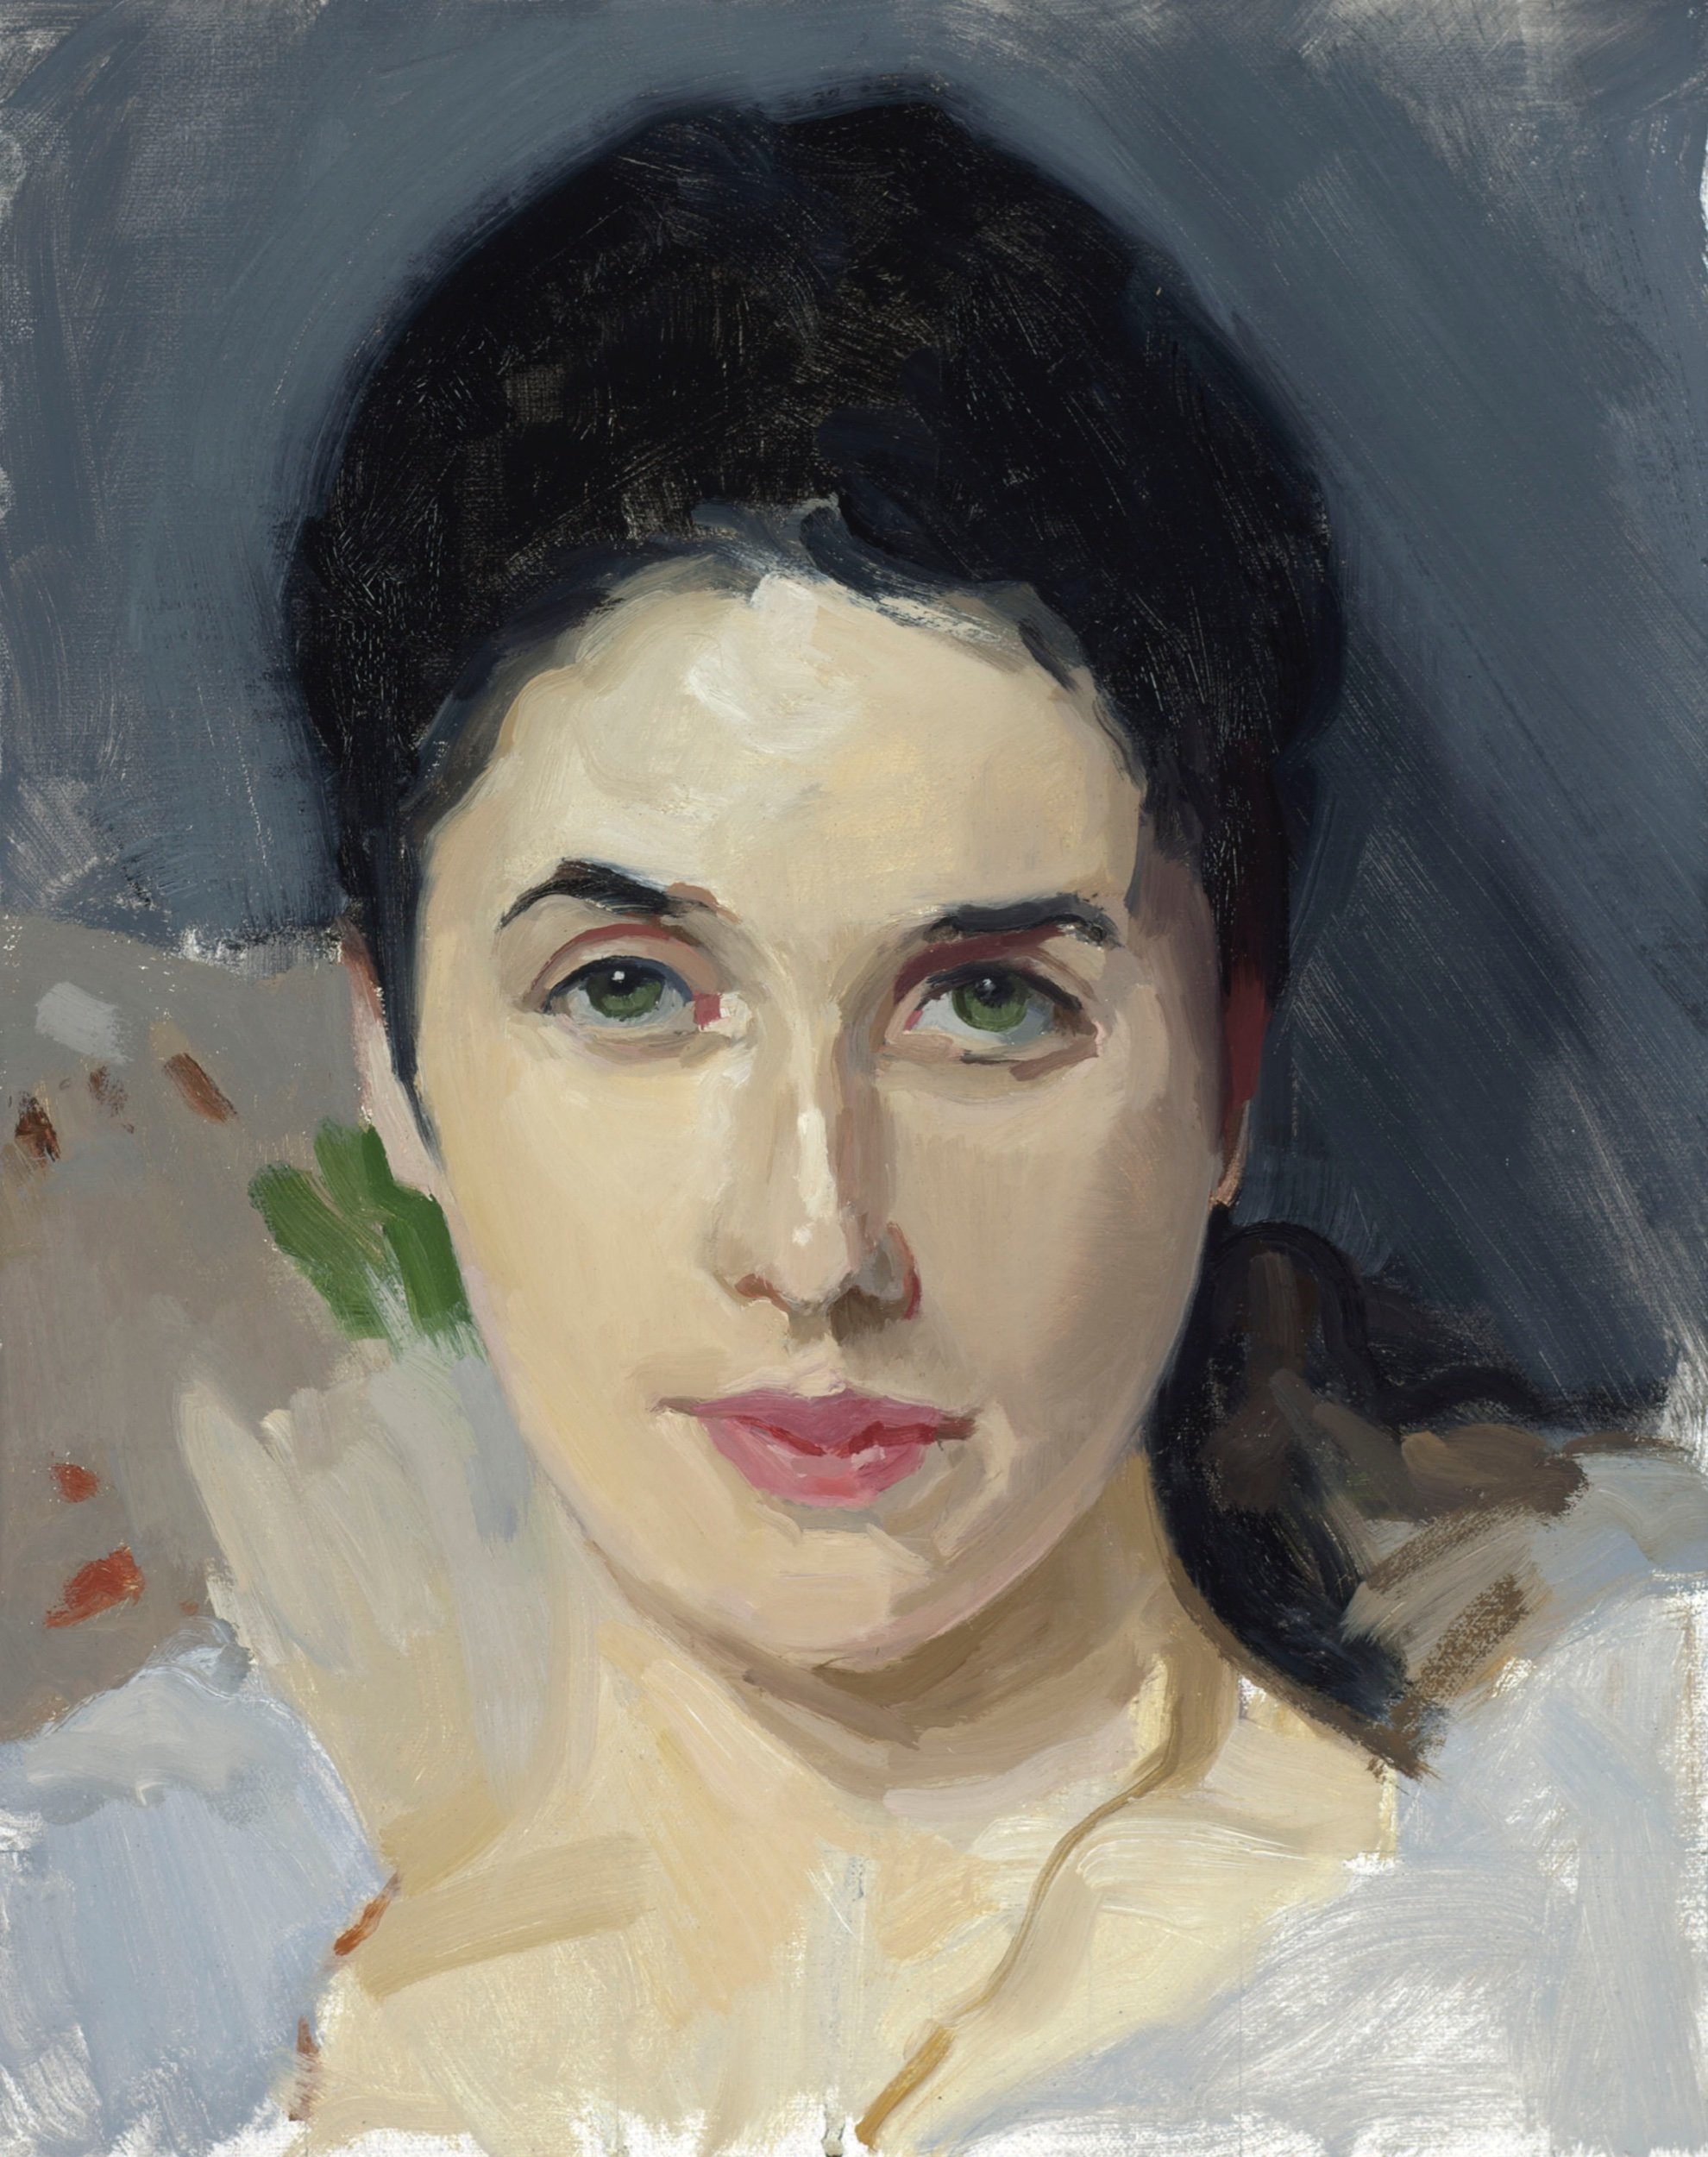 Copy after Sargent’s Portrait of Lady Agnew